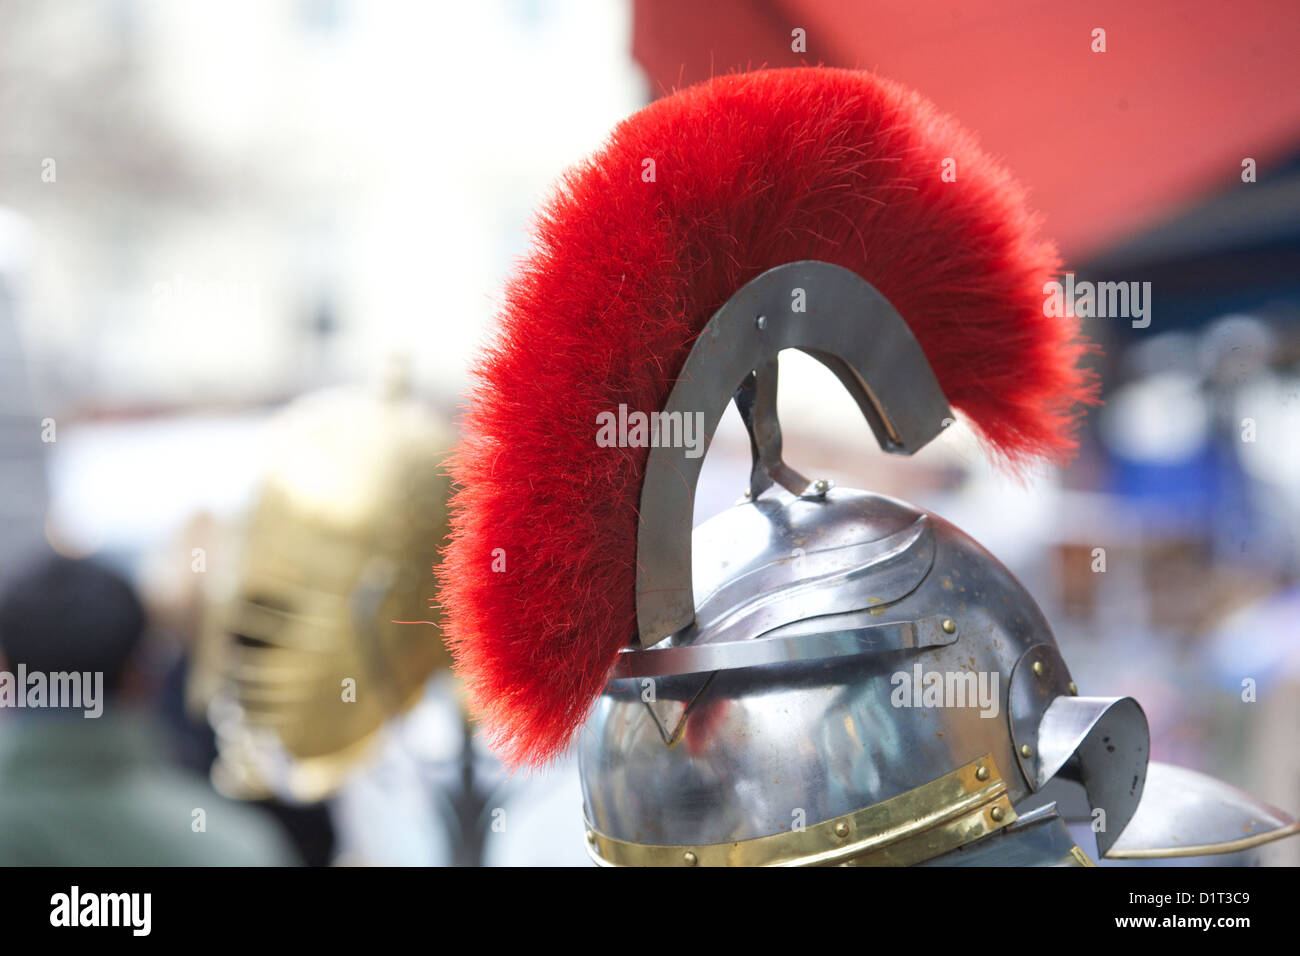 Centurion / Soldaten rote Feder geschmückt Helm auf antiken Marktstand, Portobello Road, London Stockfoto